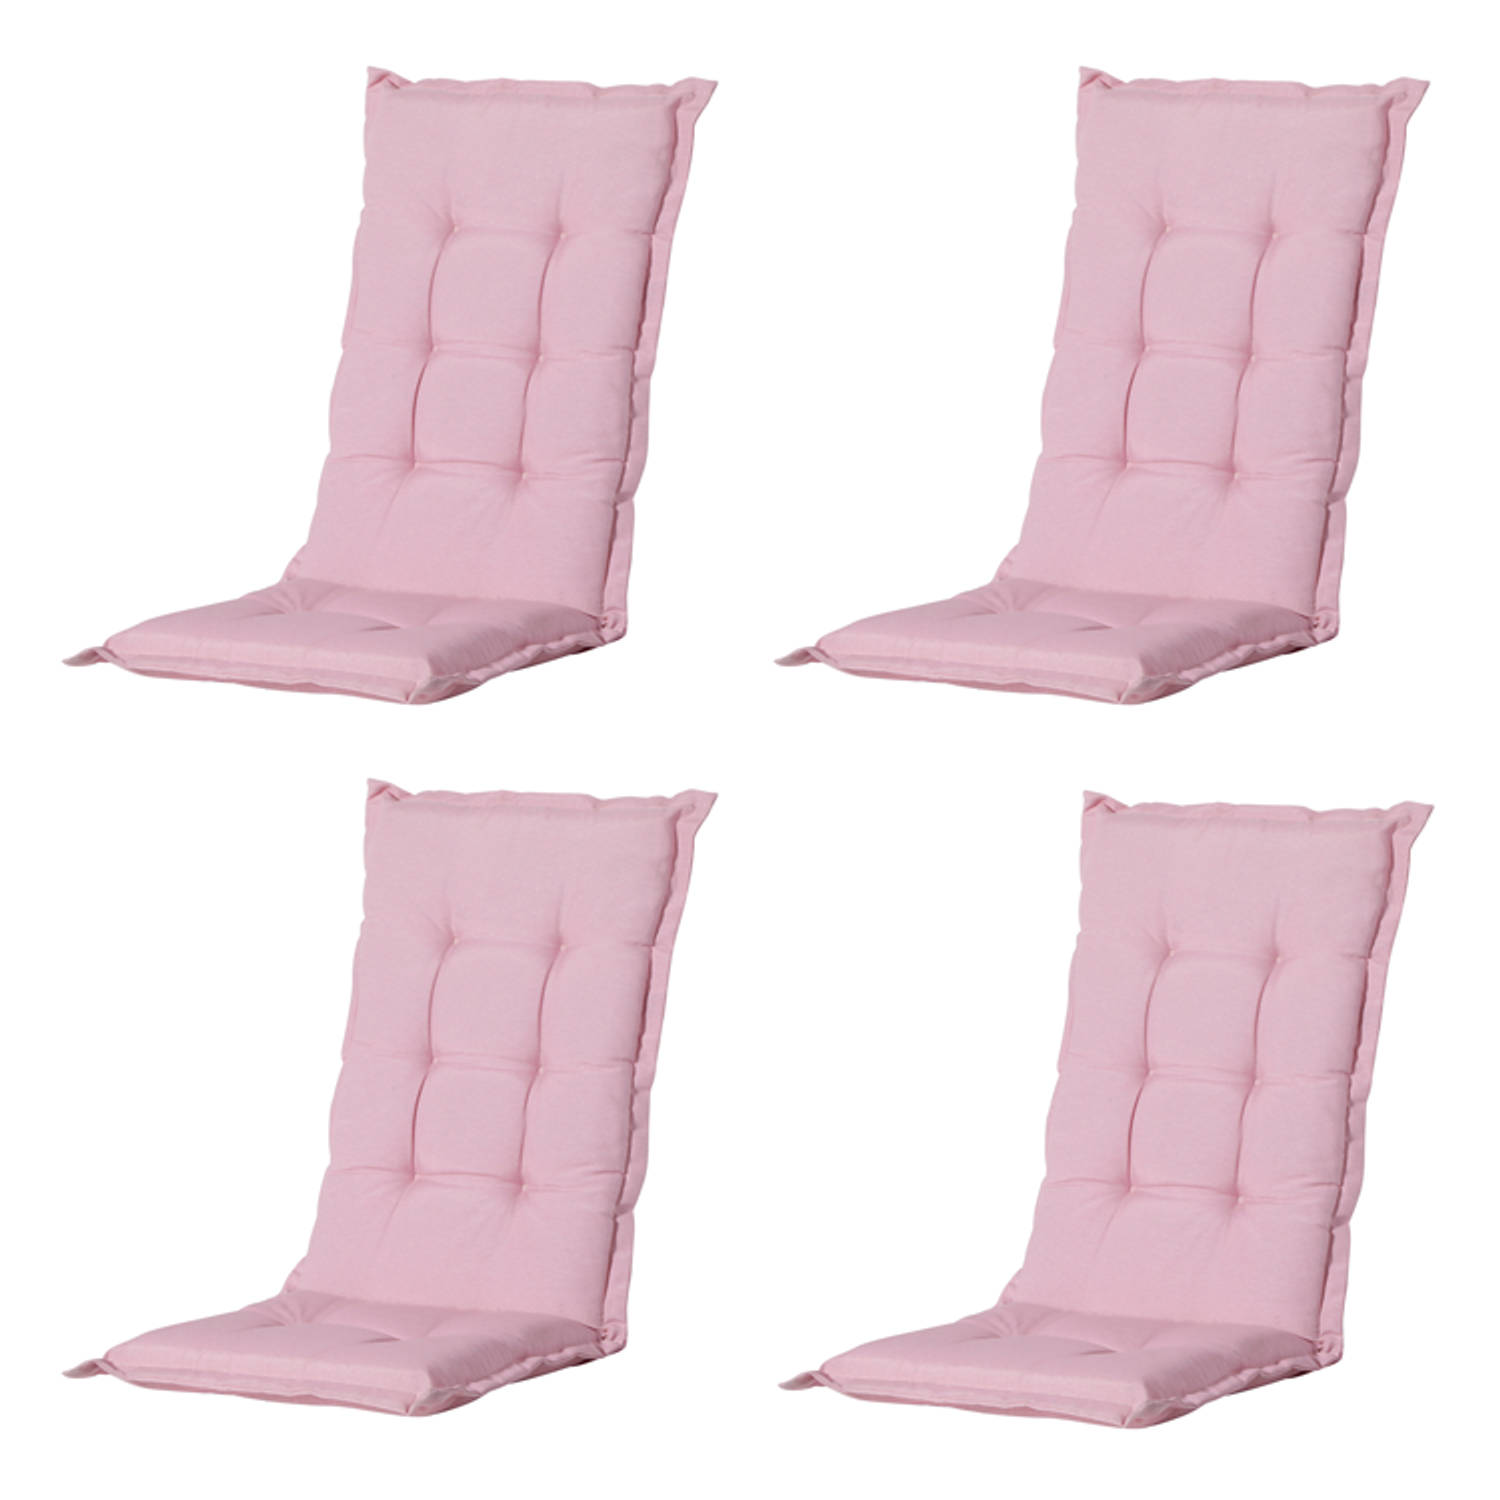 Madison Tuinkussens Hoge Rug Panama Soft Pink 123x50 Roze 4 Stuks